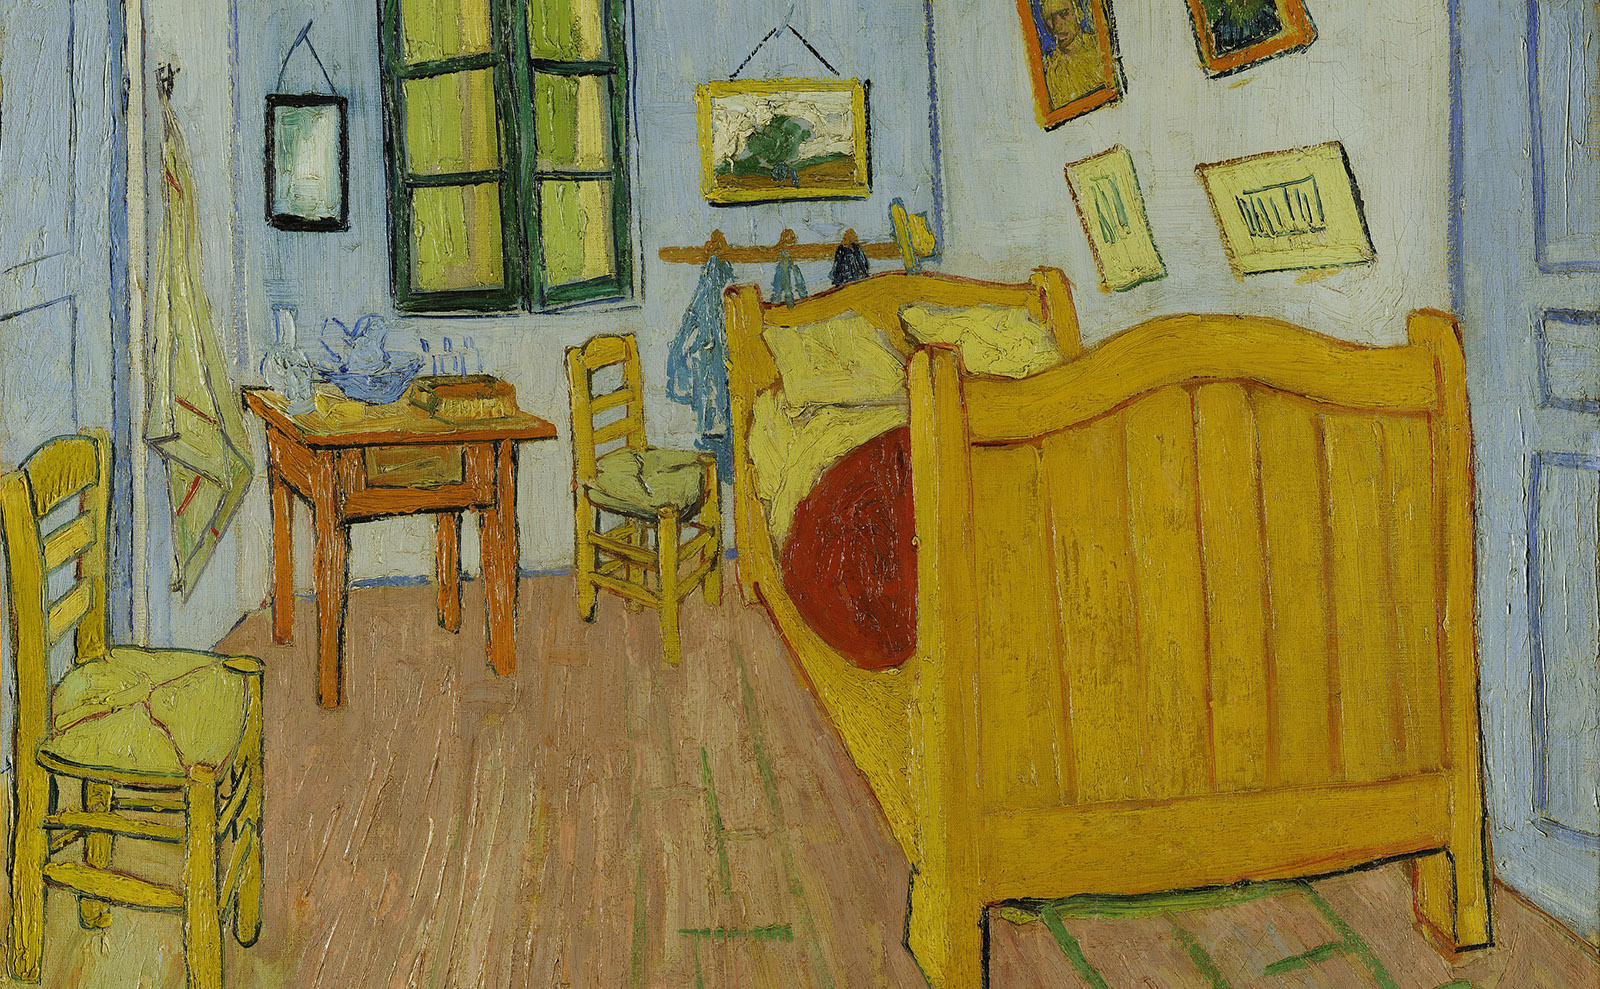 A Tender Poem Inspired by Vincent Van Gogh's Painting 'Bedroom in Arles'